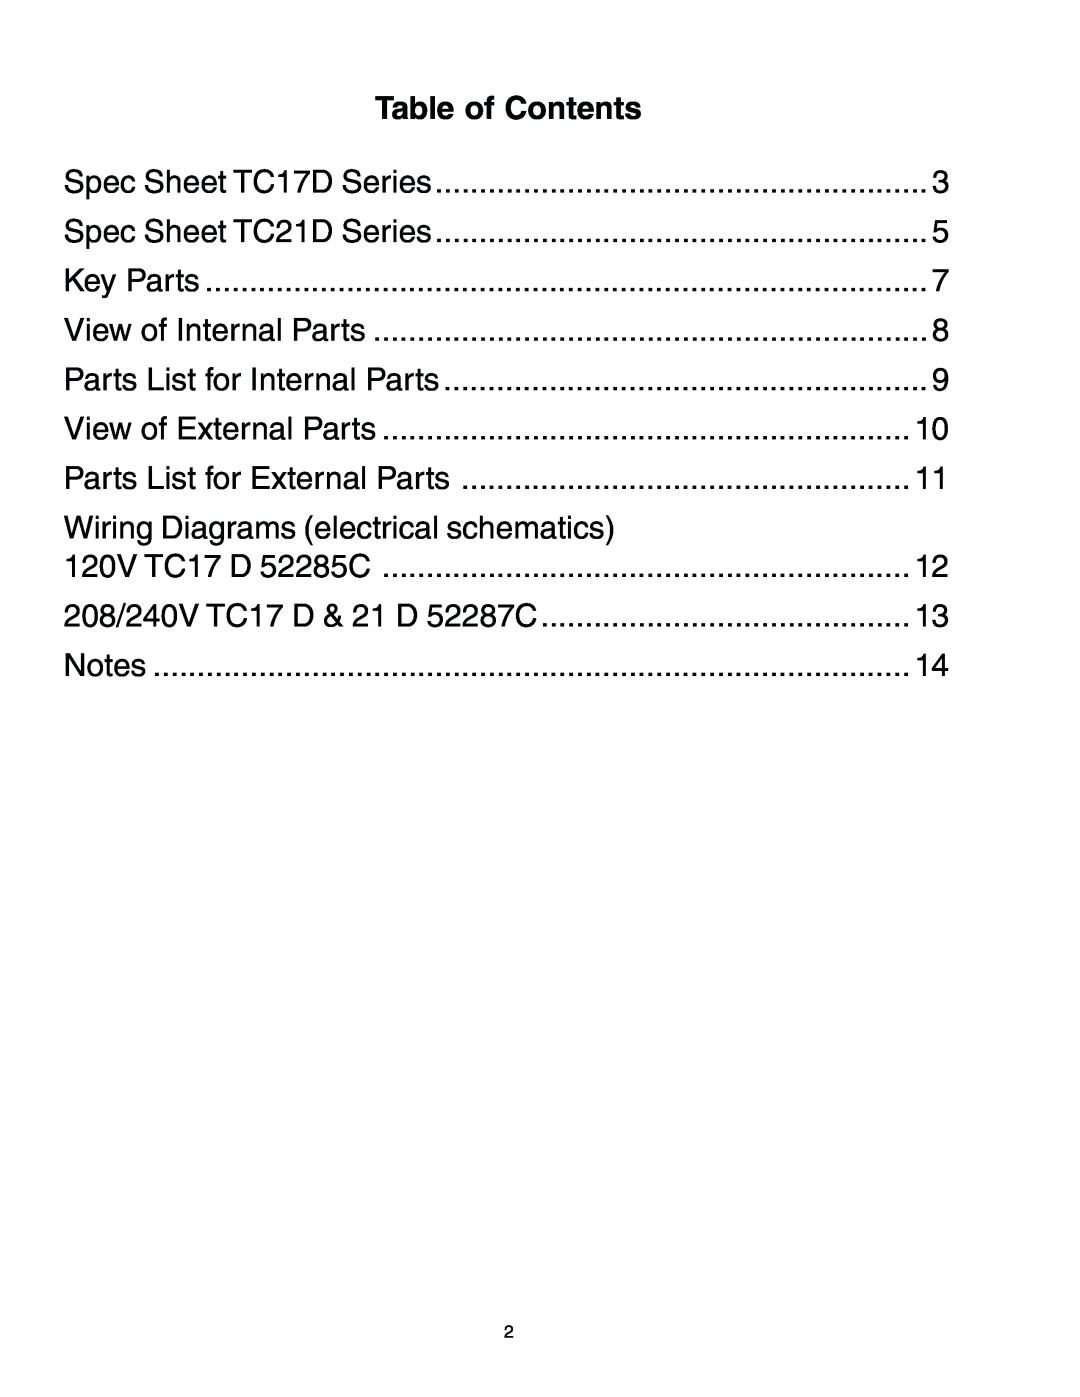 Toastmaster TC17D3 FEC 666-240V, TC21D3 FEC 663-208V manual Table of Contents, Wiring Diagrams electrical schematics 